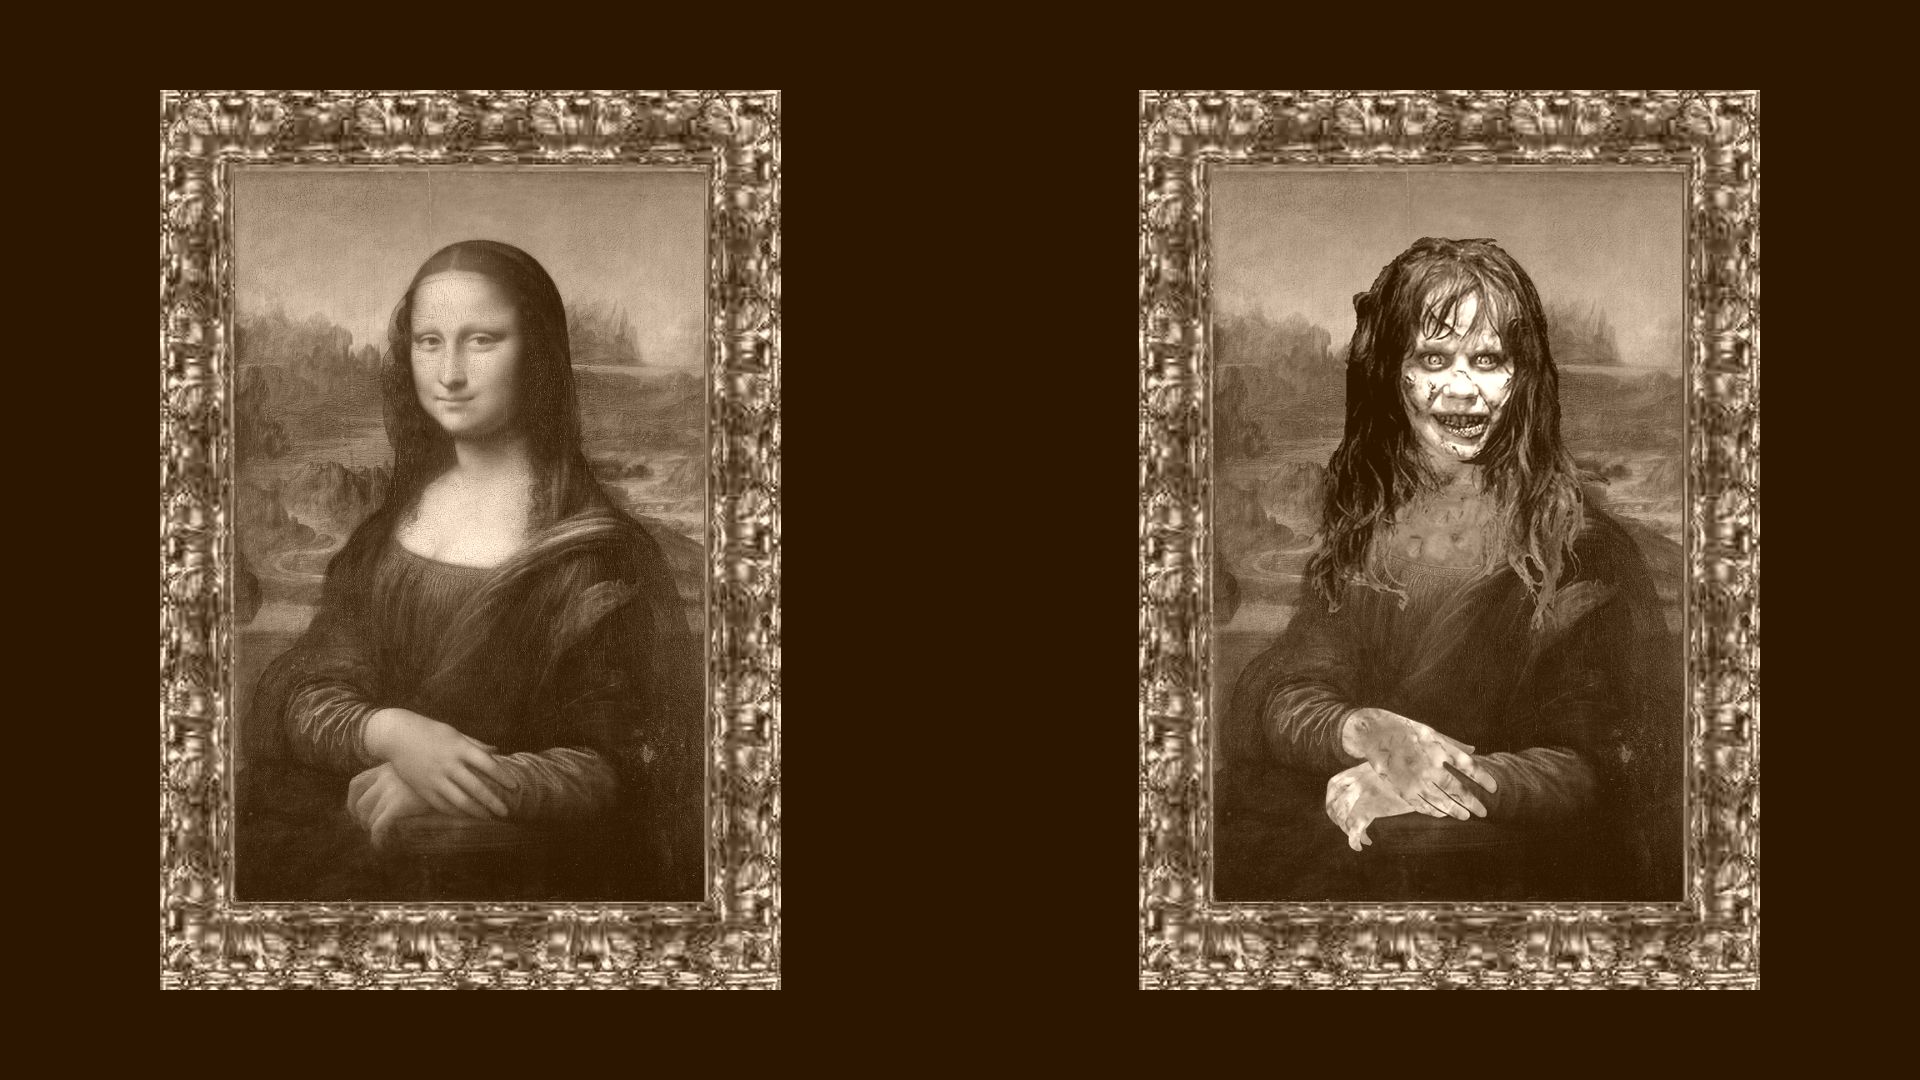 Mona Lisa wallpaper full hd - The Exorcist Wallpaper 34552532